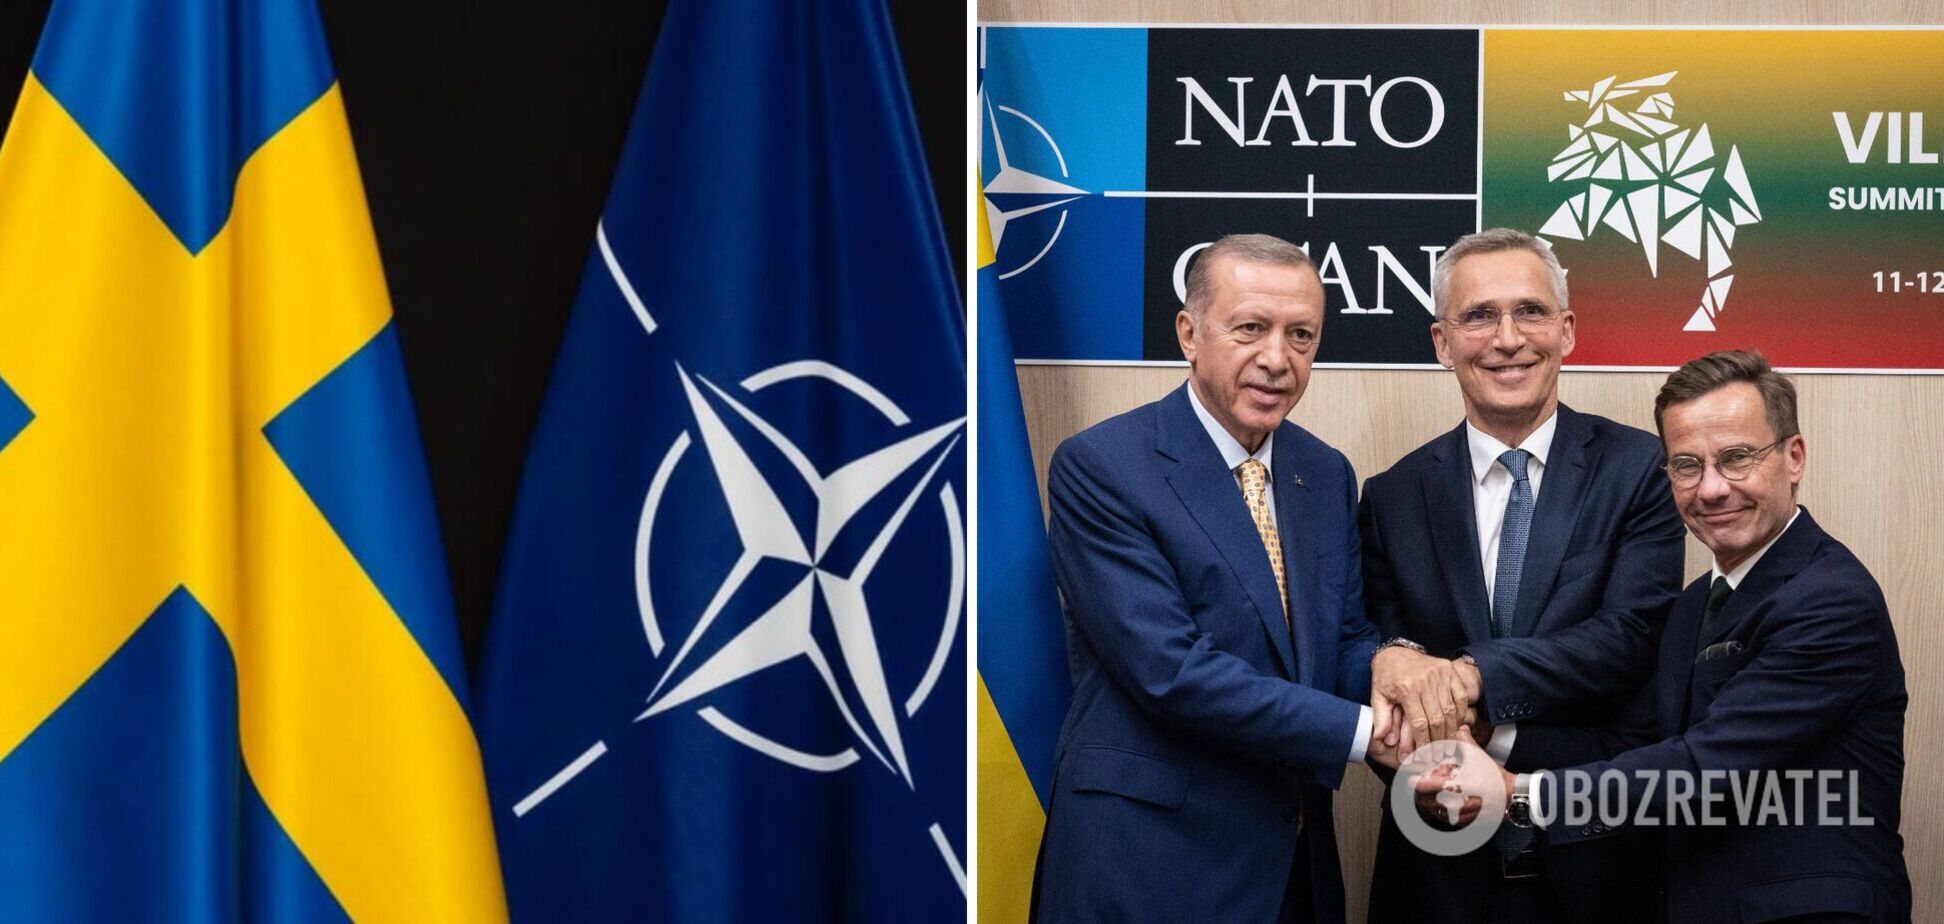 Реальный победитель саммита НАТО – Эрдоган, или Почему Украине нужно смотреть на Турцию